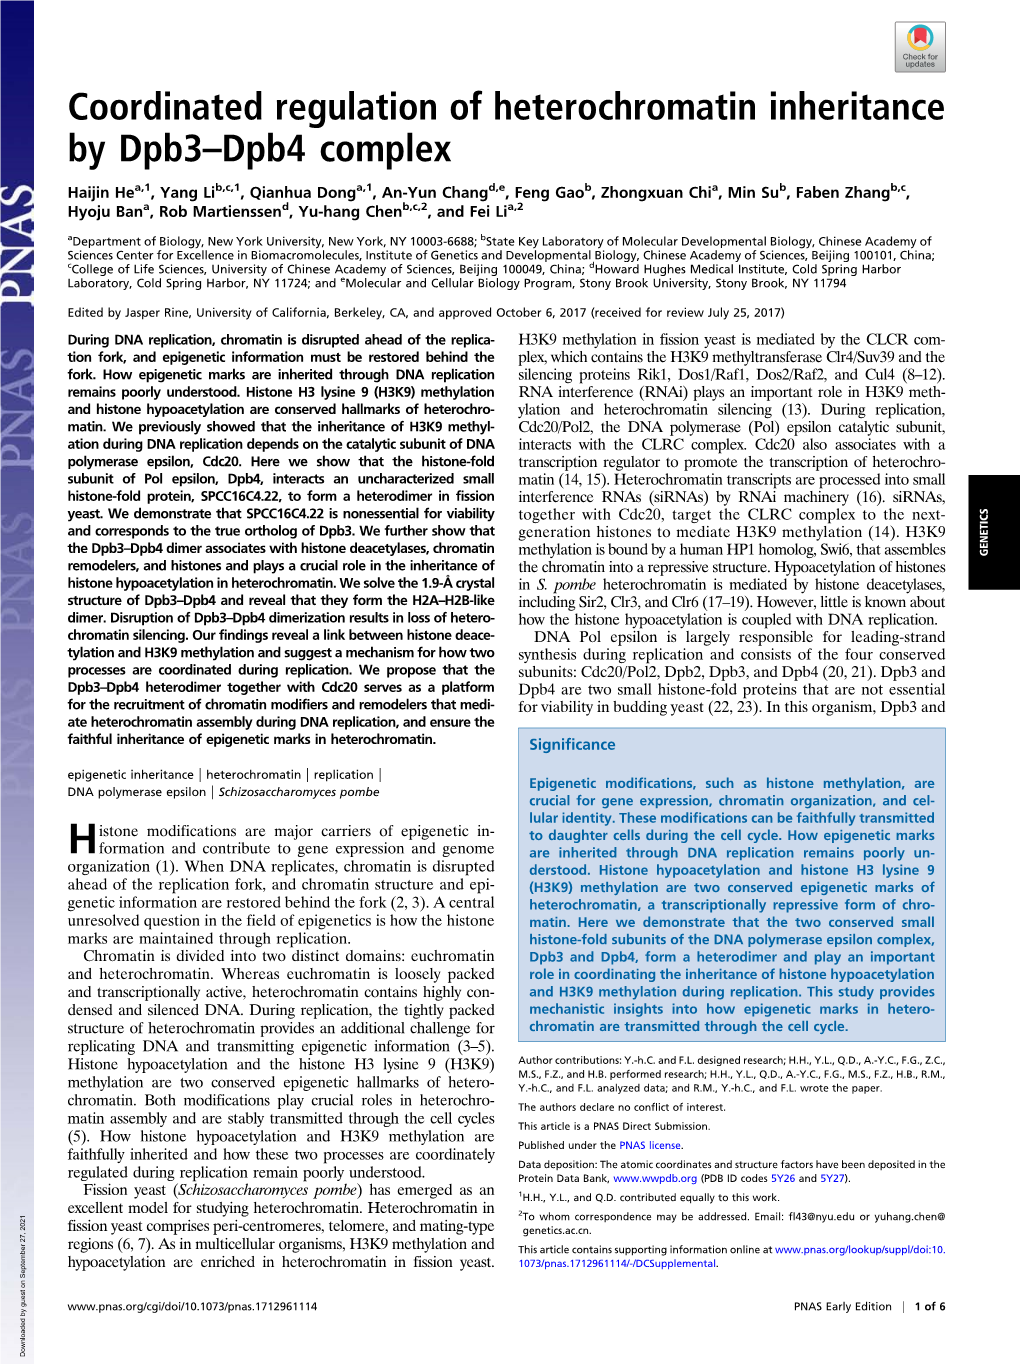 Coordinated Regulation of Heterochromatin Inheritance by Dpb3–Dpb4 Complex